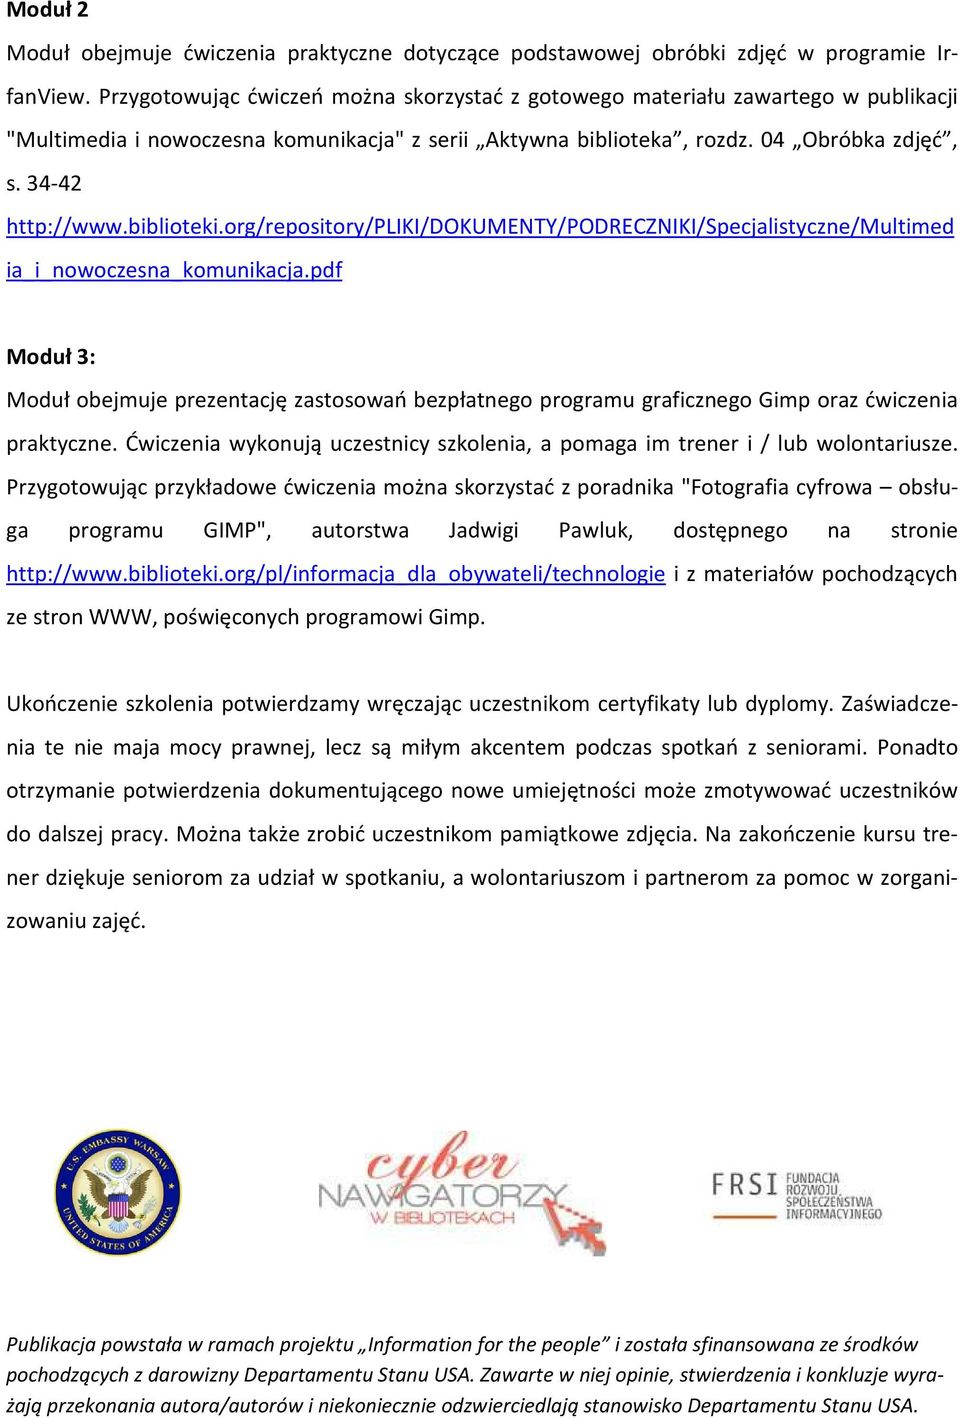 biblioteki.org/repository/pliki/dokumenty/podreczniki/specjalistyczne/multimed ia_i_nowoczesna_komunikacja.